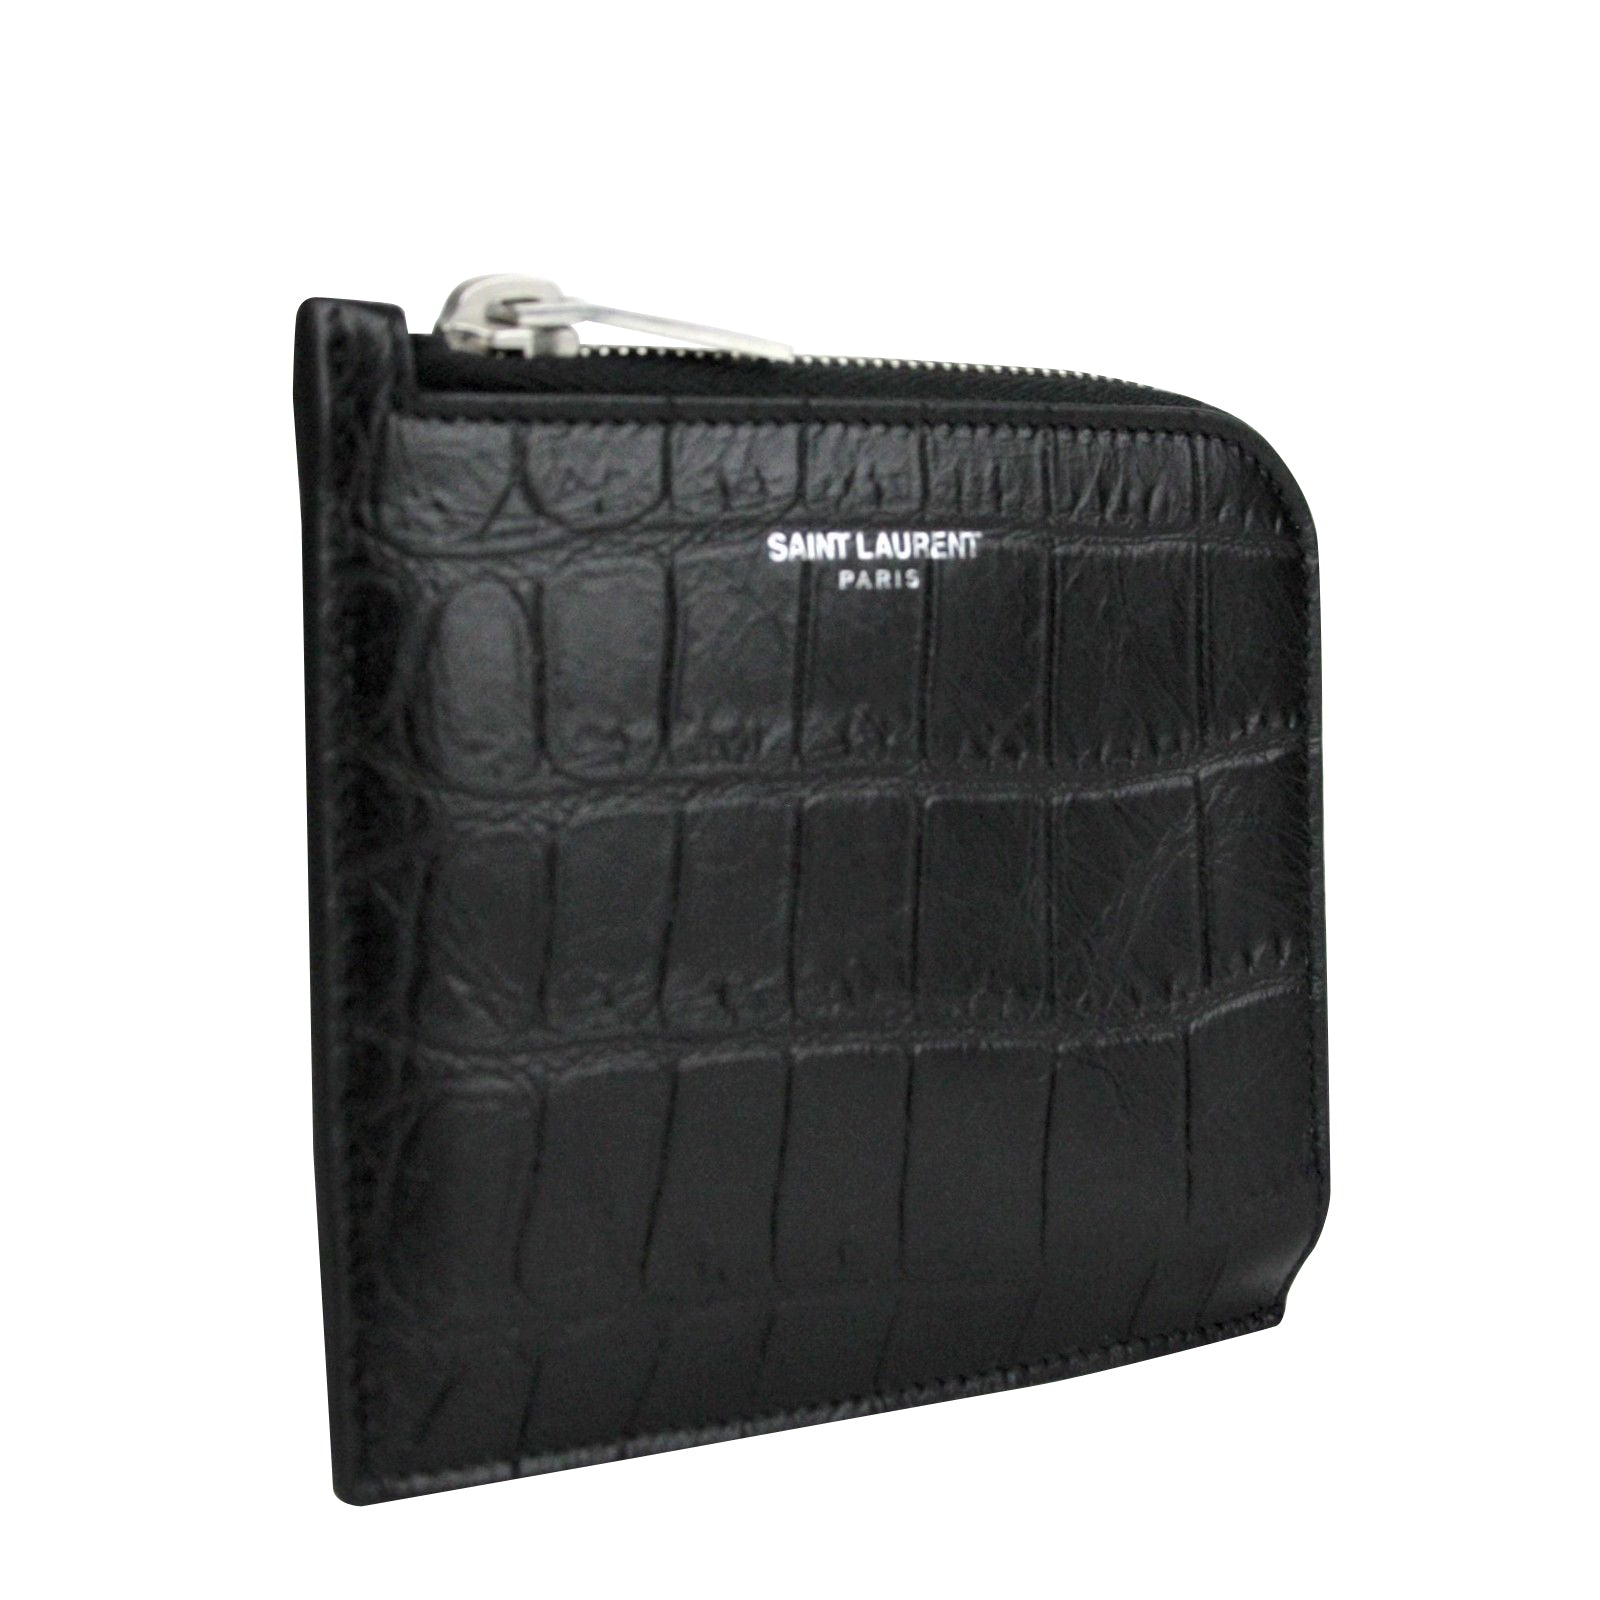 Saint Laurent - crocodile-embossed Money Clip Wallet - Men - Leather - One Size - Black